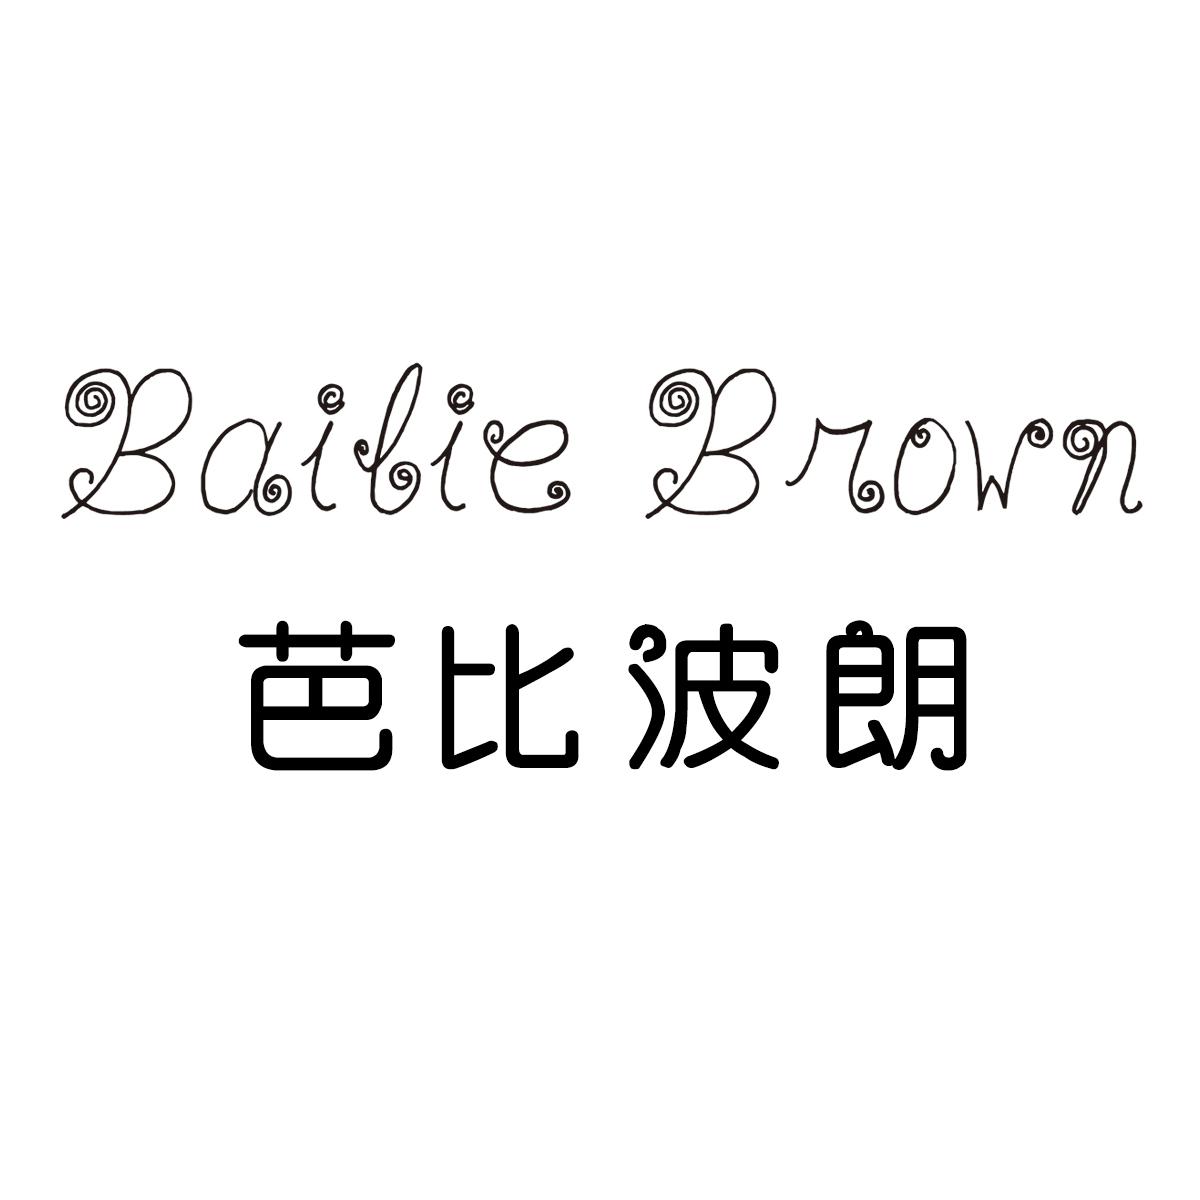 芭比波朗logo图片